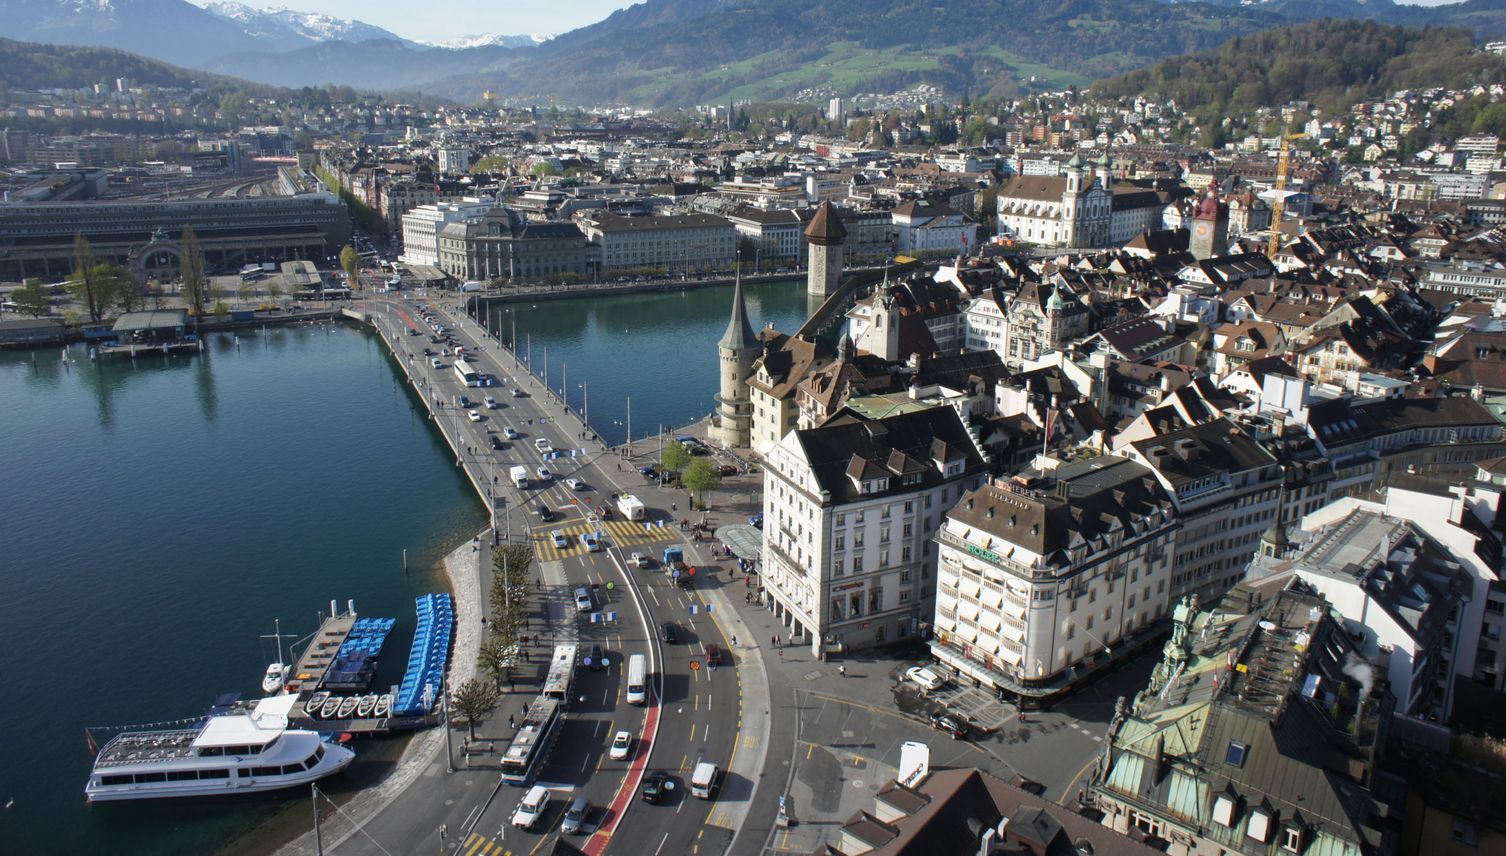 Luzern nicht mehr Januar-Temperaturrekordhalter